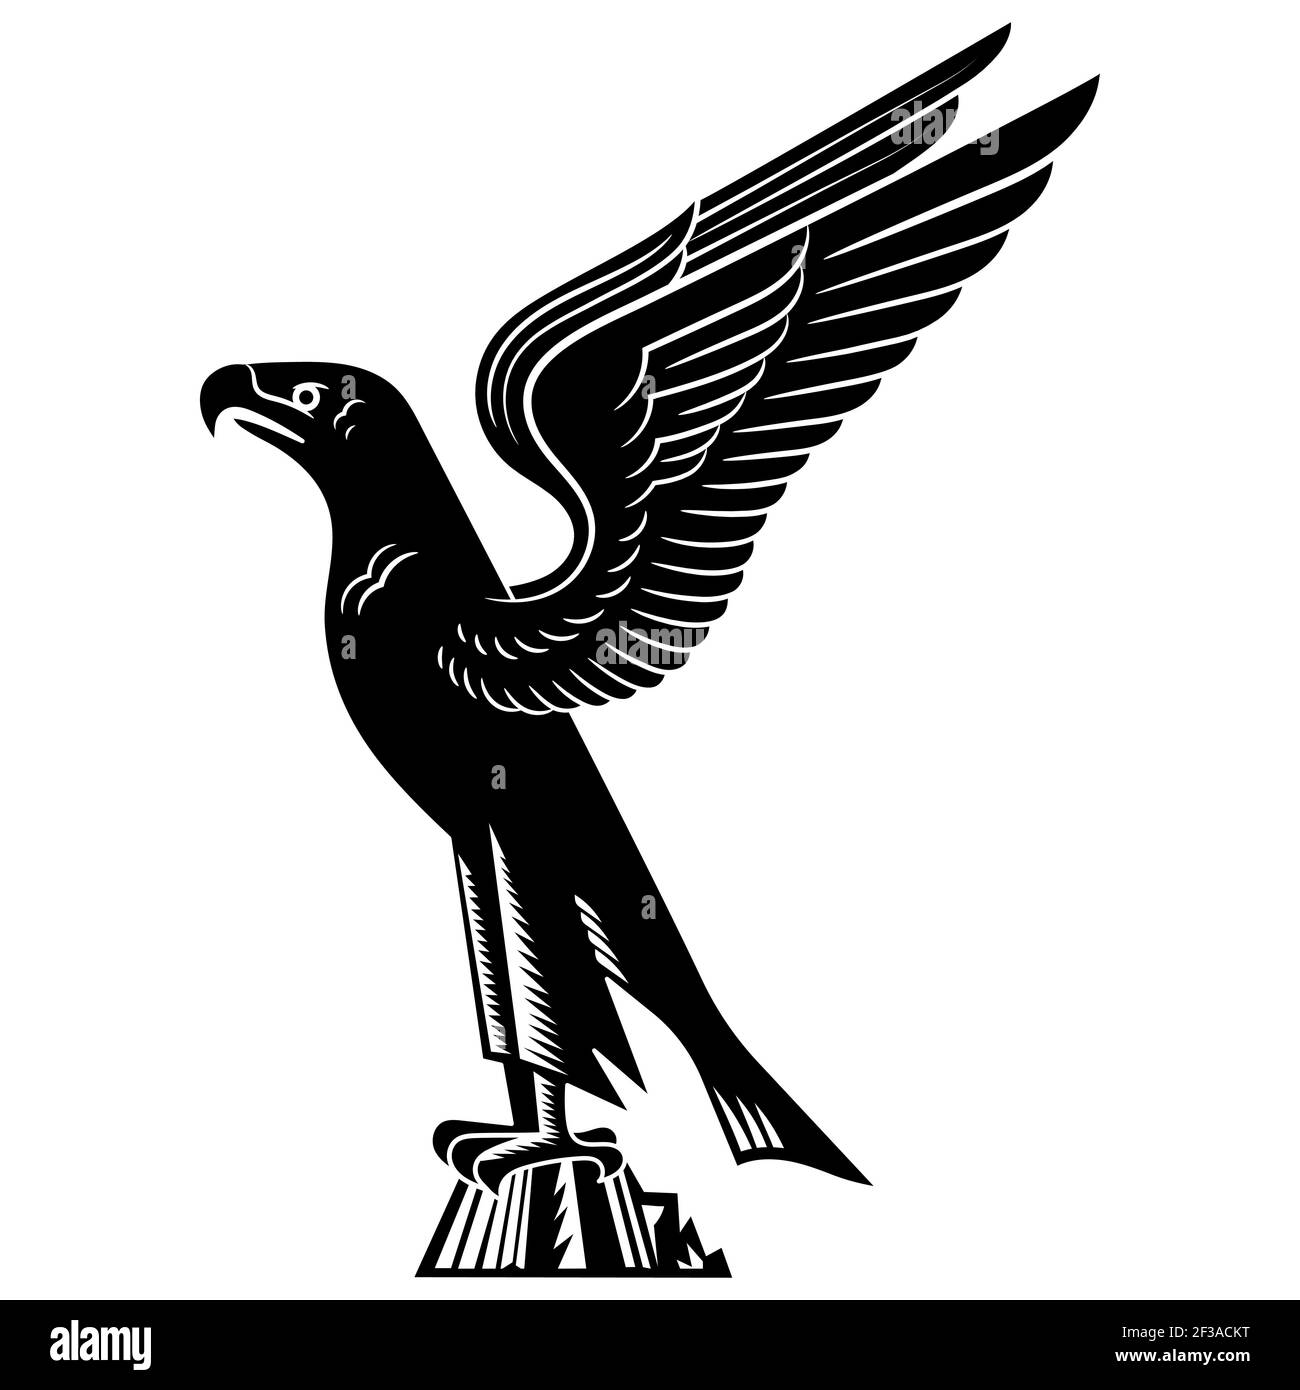 Adler. Stilisiertes Bild eines Adlers mit ausgestreckten Flügeln Stock Vektor